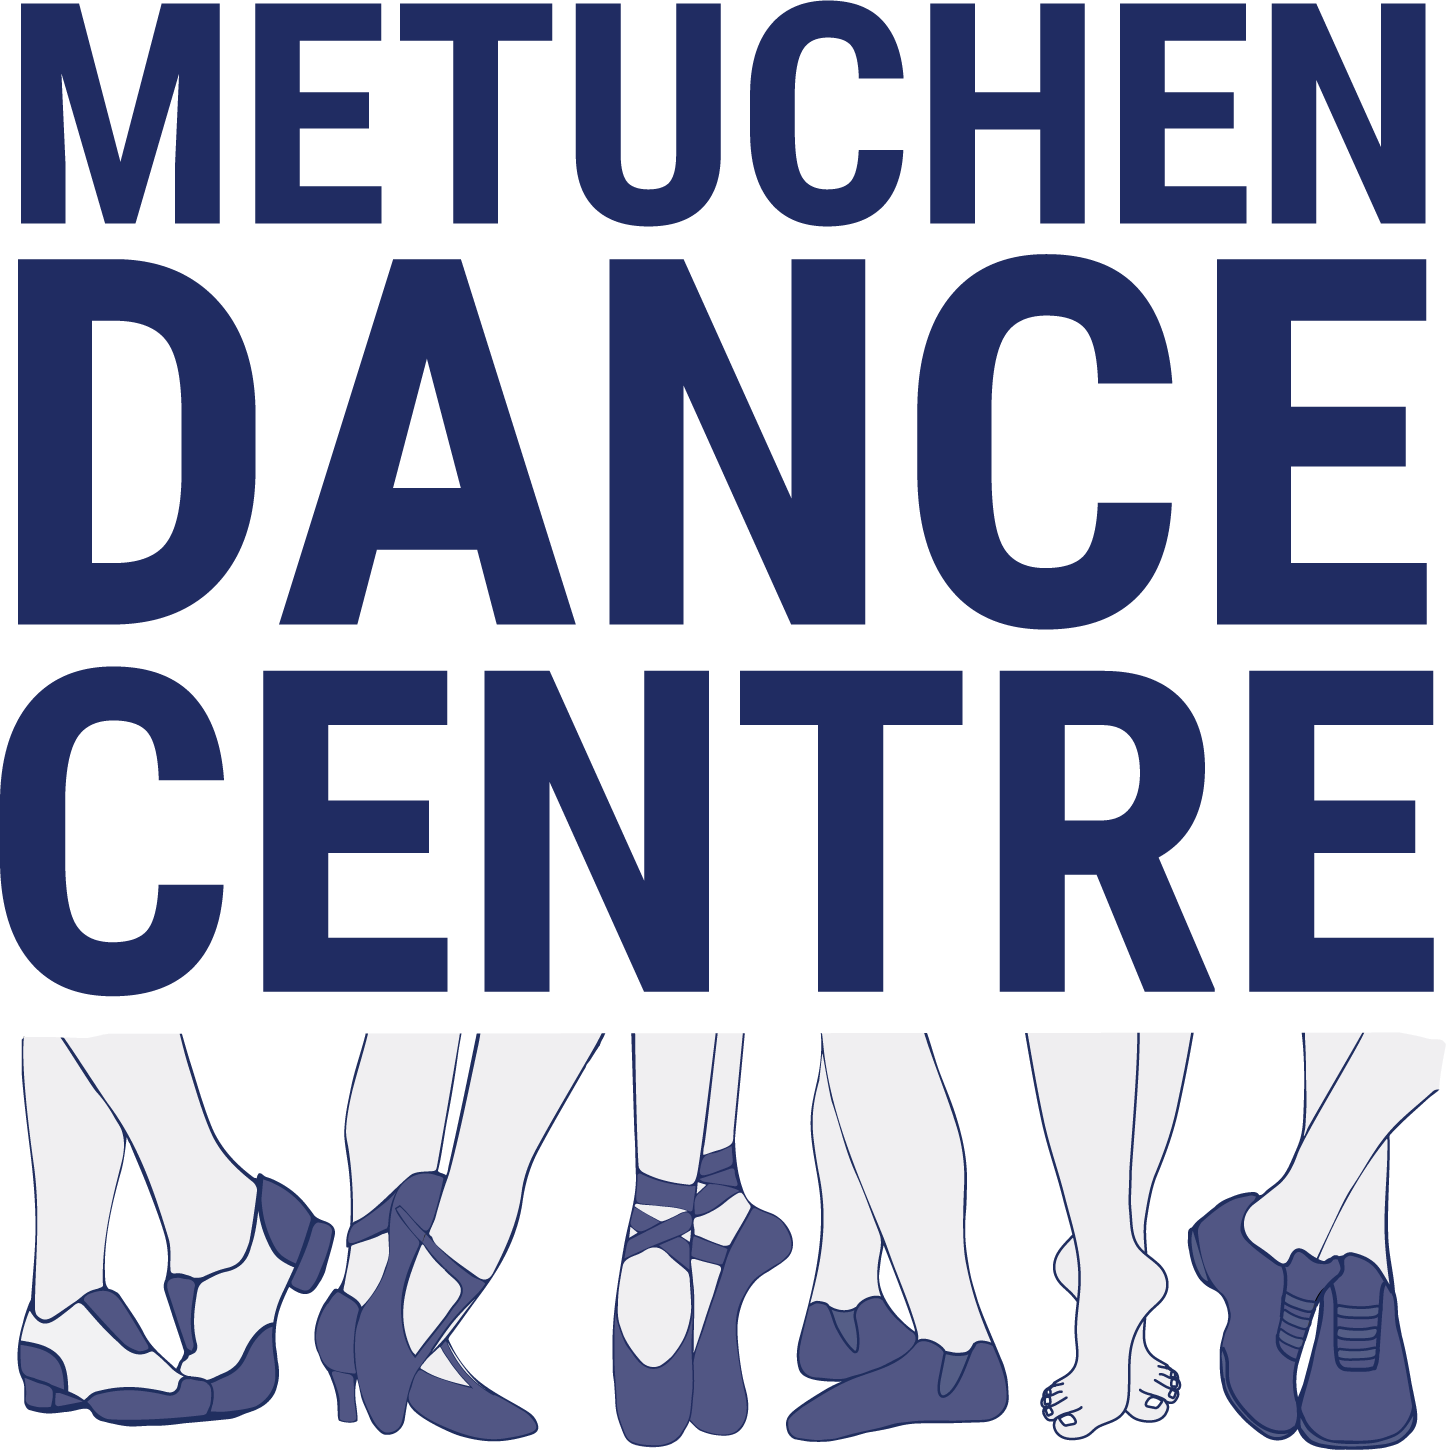 Metuchen Dance Centre